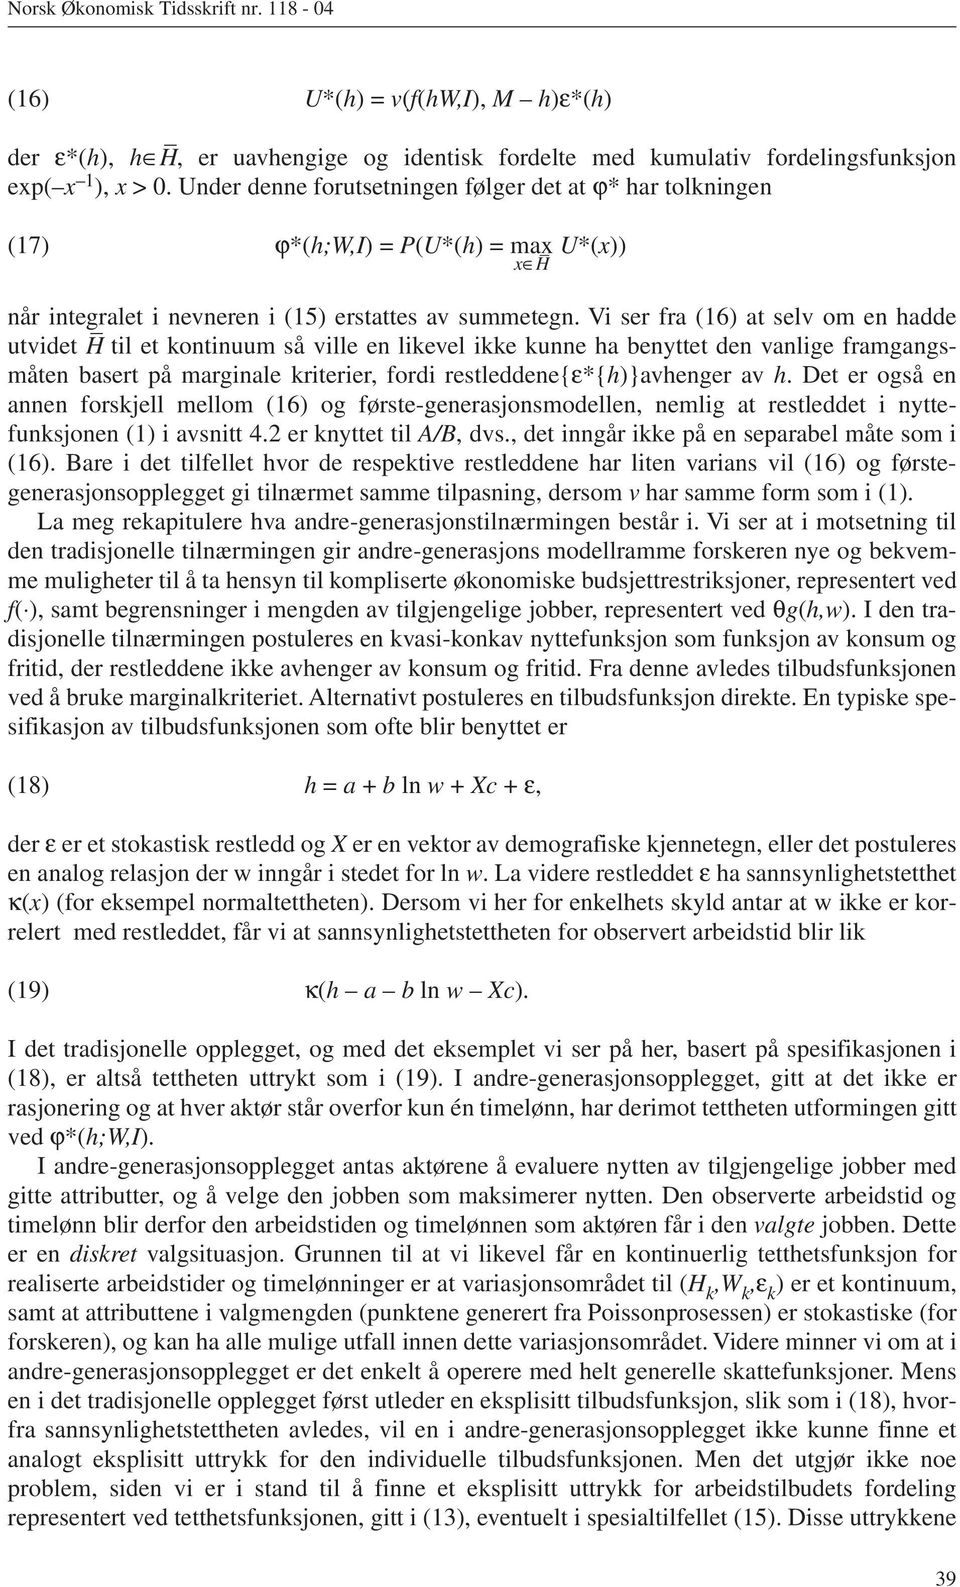 Vi ser fra (16) at selv om en hadde utvidet H til et kontinuum så ville en likevel ikke kunne ha benyttet den vanlige framgangsmåten basert på marginale kriterier, fordi restleddene{ε*{h)}avhenger av